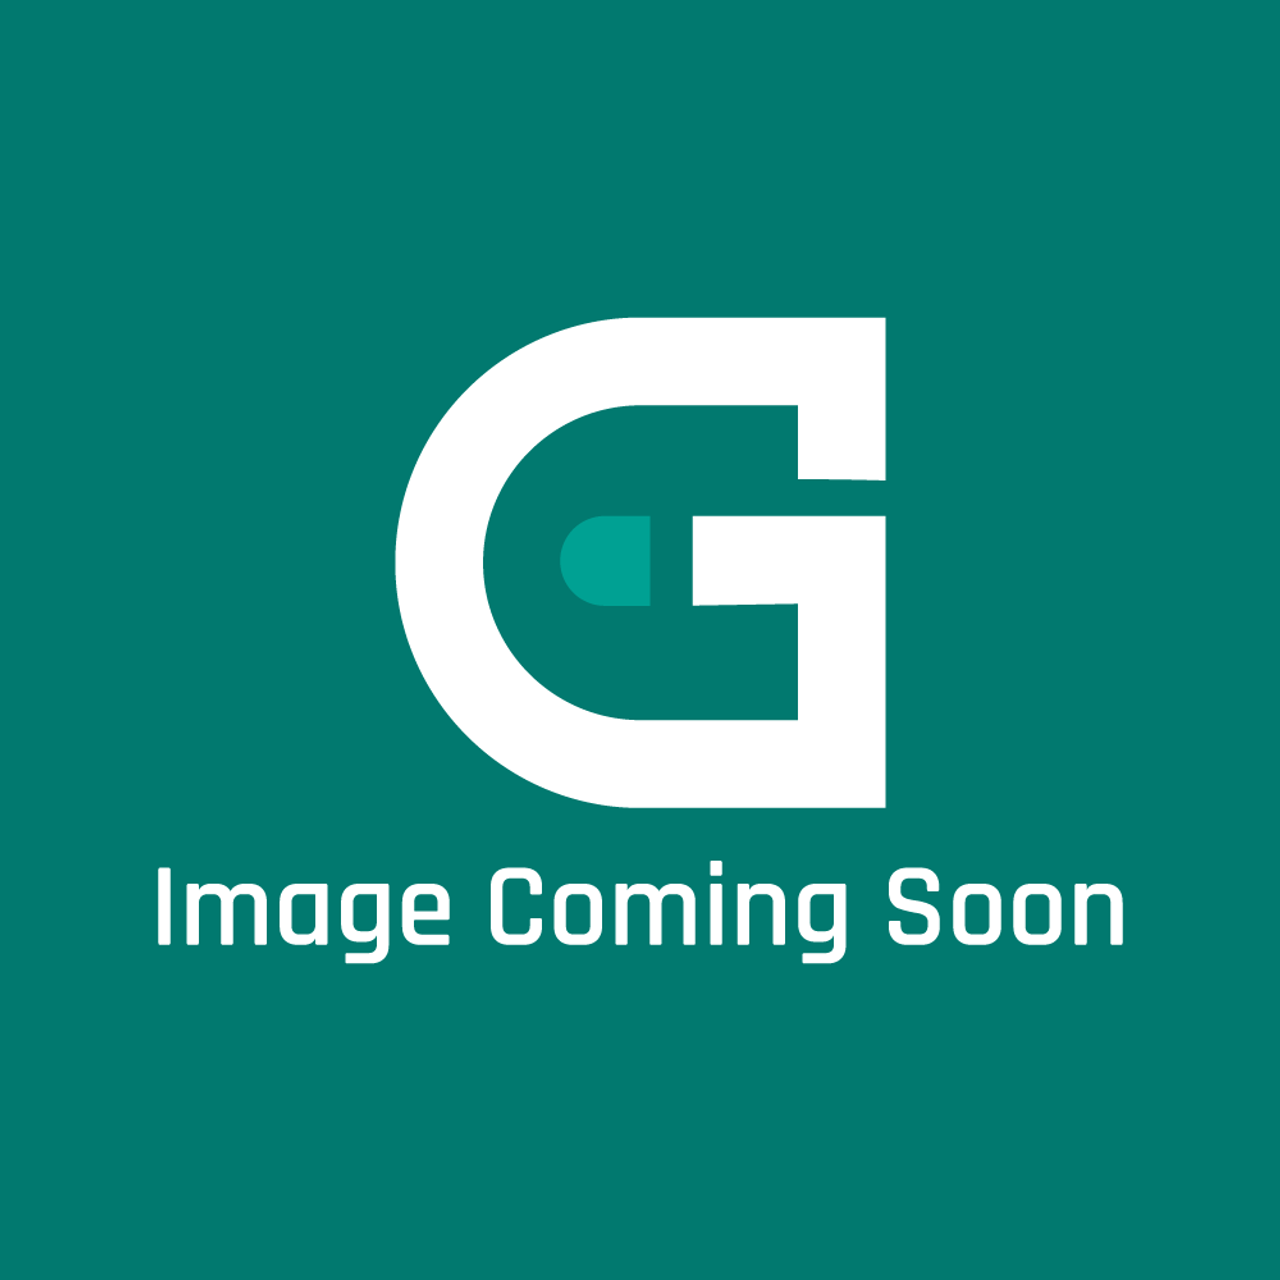 Viking G32012719IB - 27" DOOR ASSY W/LOGO *IB* - Image Coming Soon!